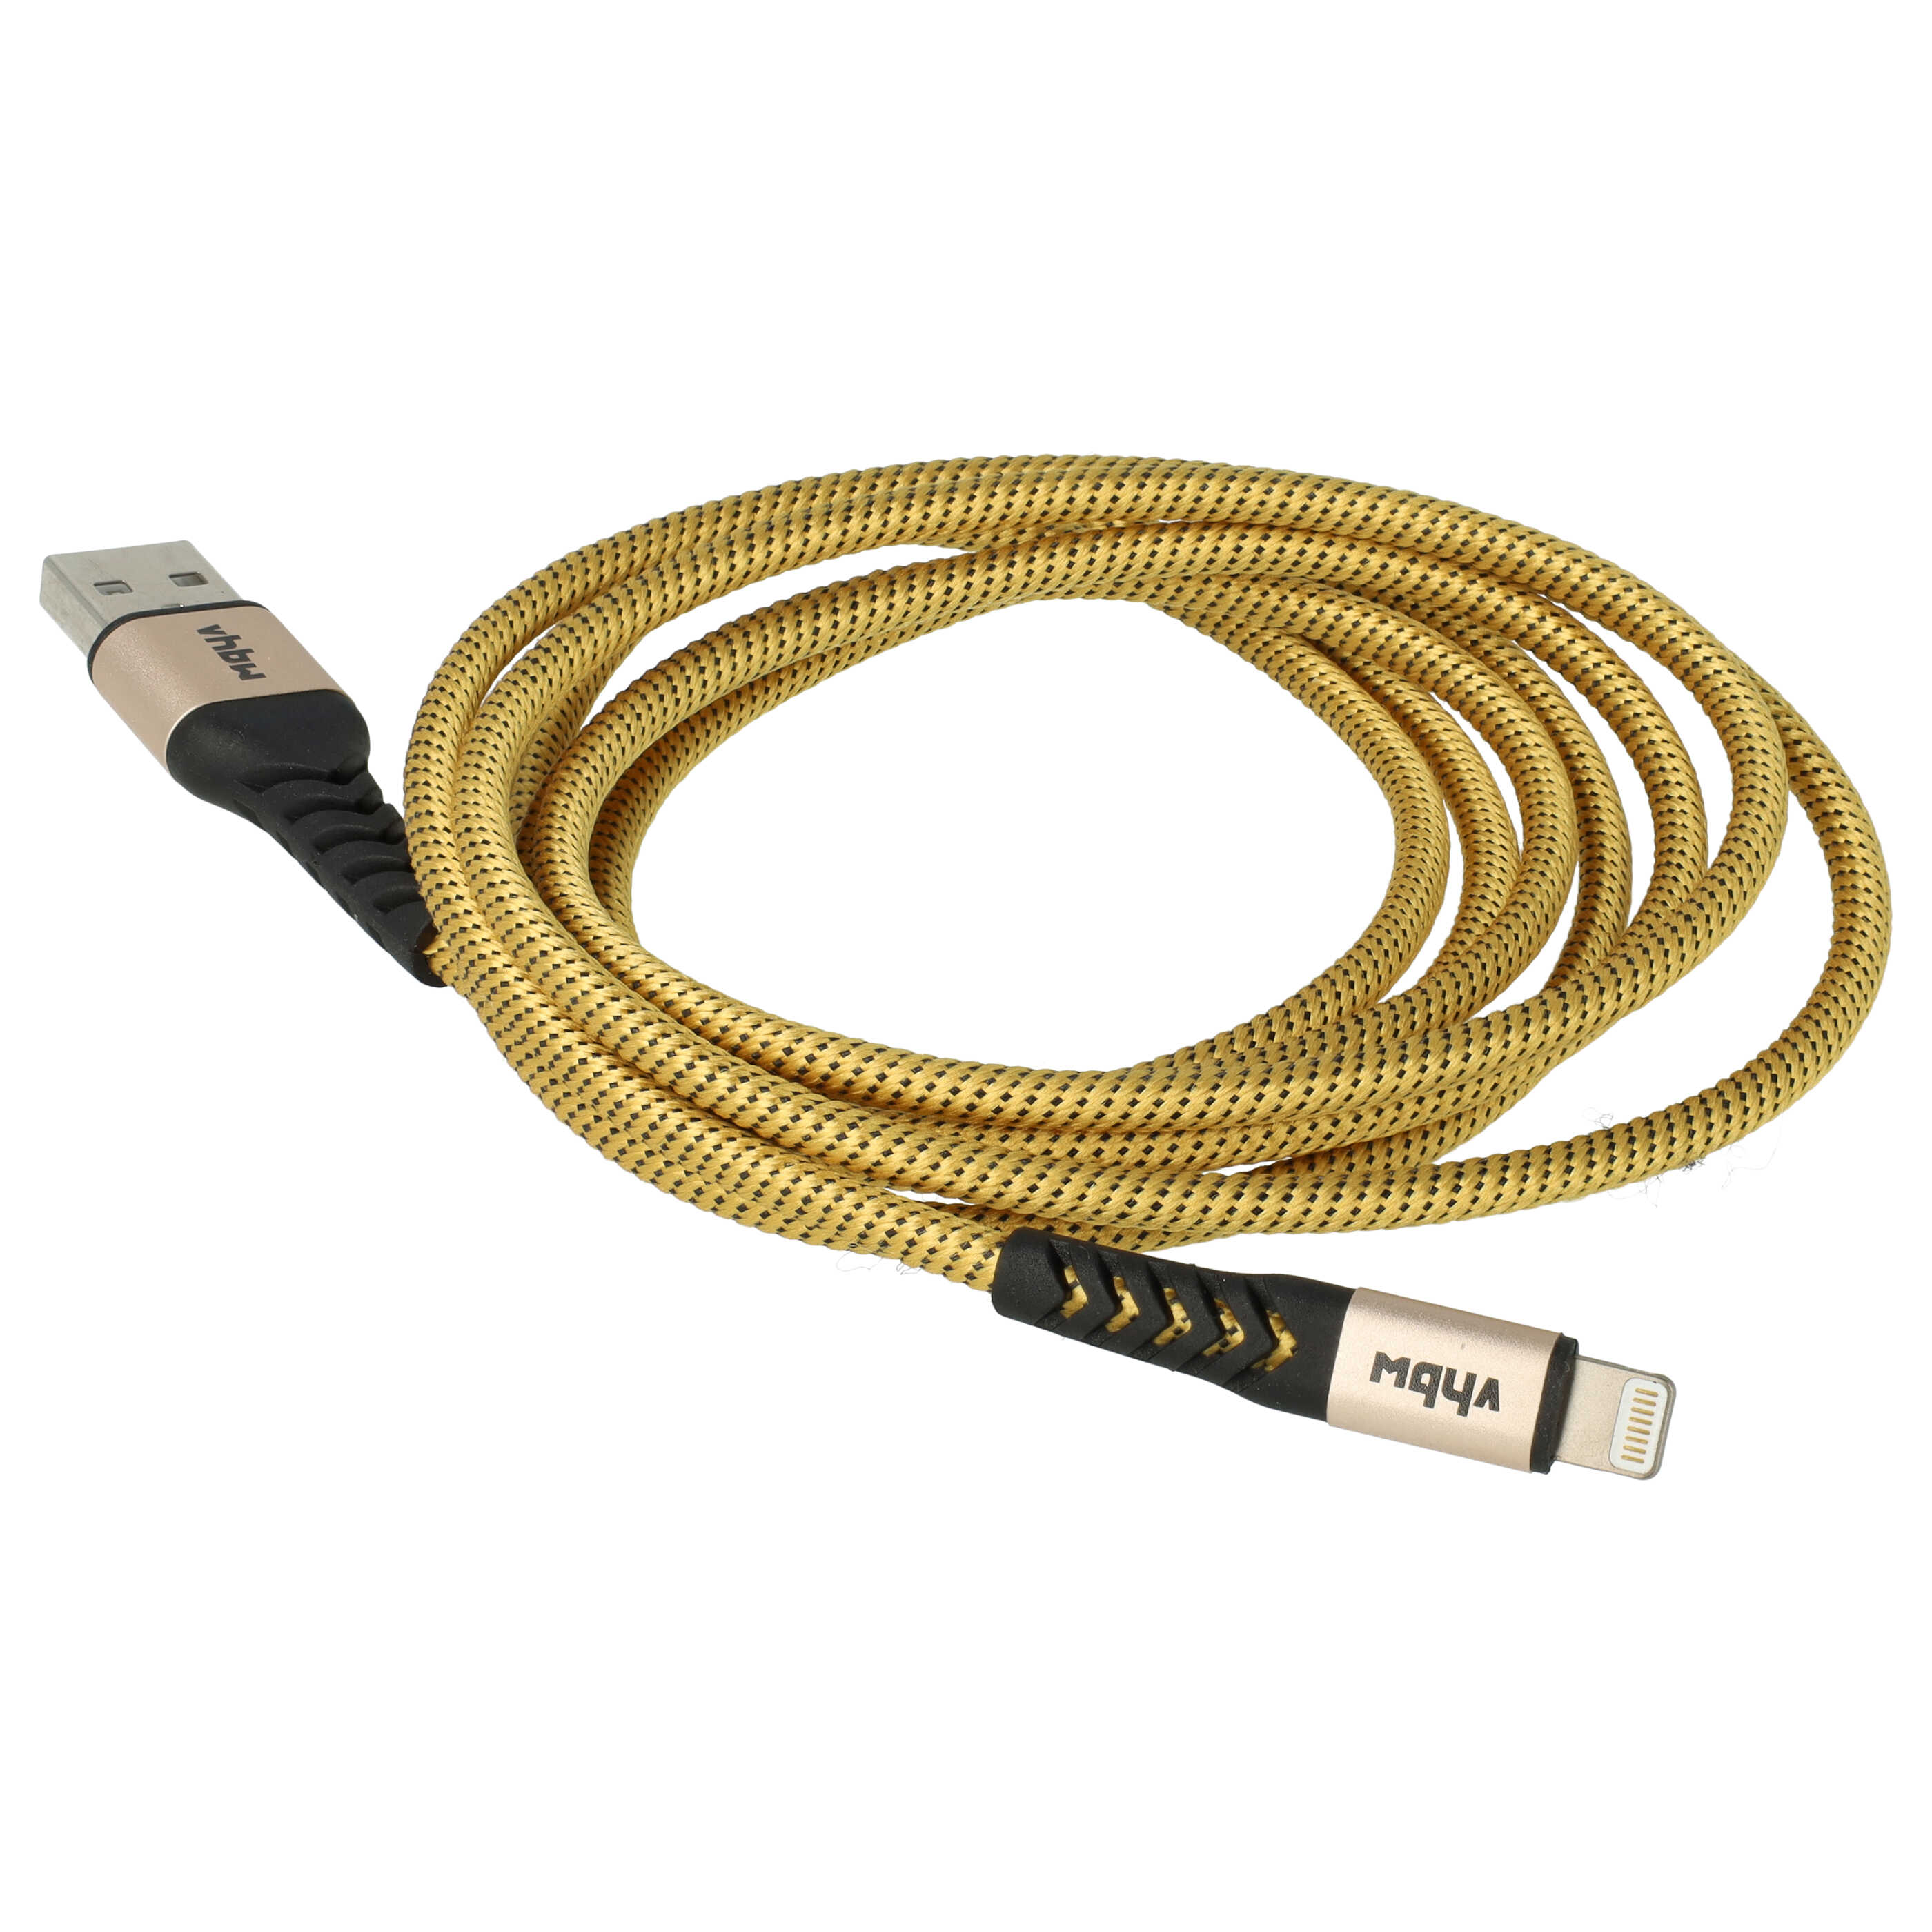 Cable lightning a USB A para dispositivos Apple iOS - negro / amarillo, 180 cm